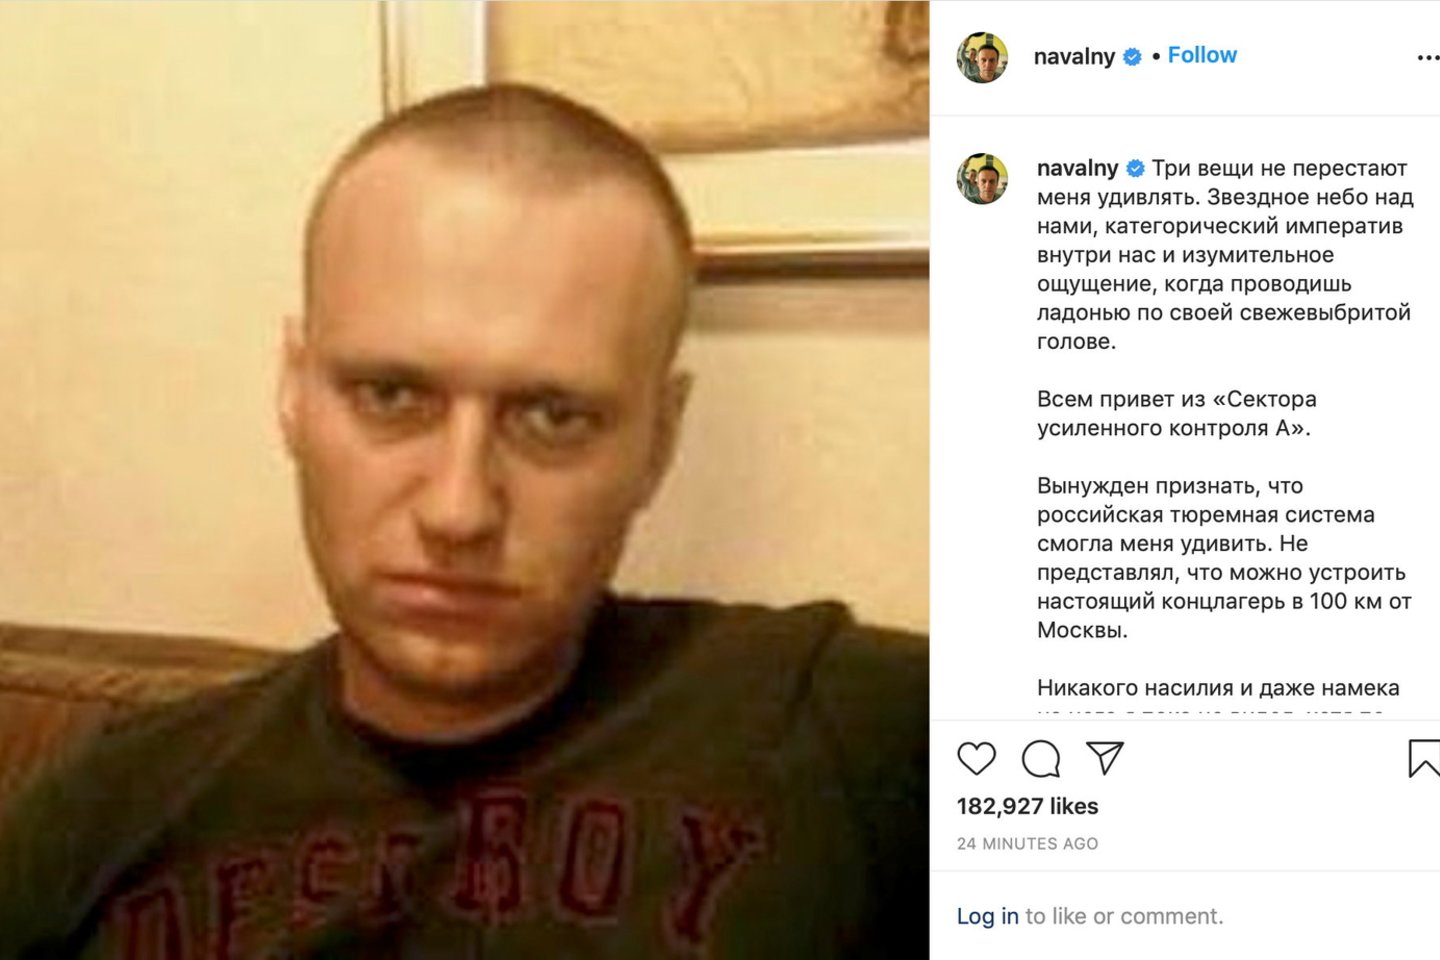 Pirmadienį instagrame paskelbtame pranešime A. Navalnas pasiskundė naujais negalavimais.<br>Reuters/Scanpix nuotr.